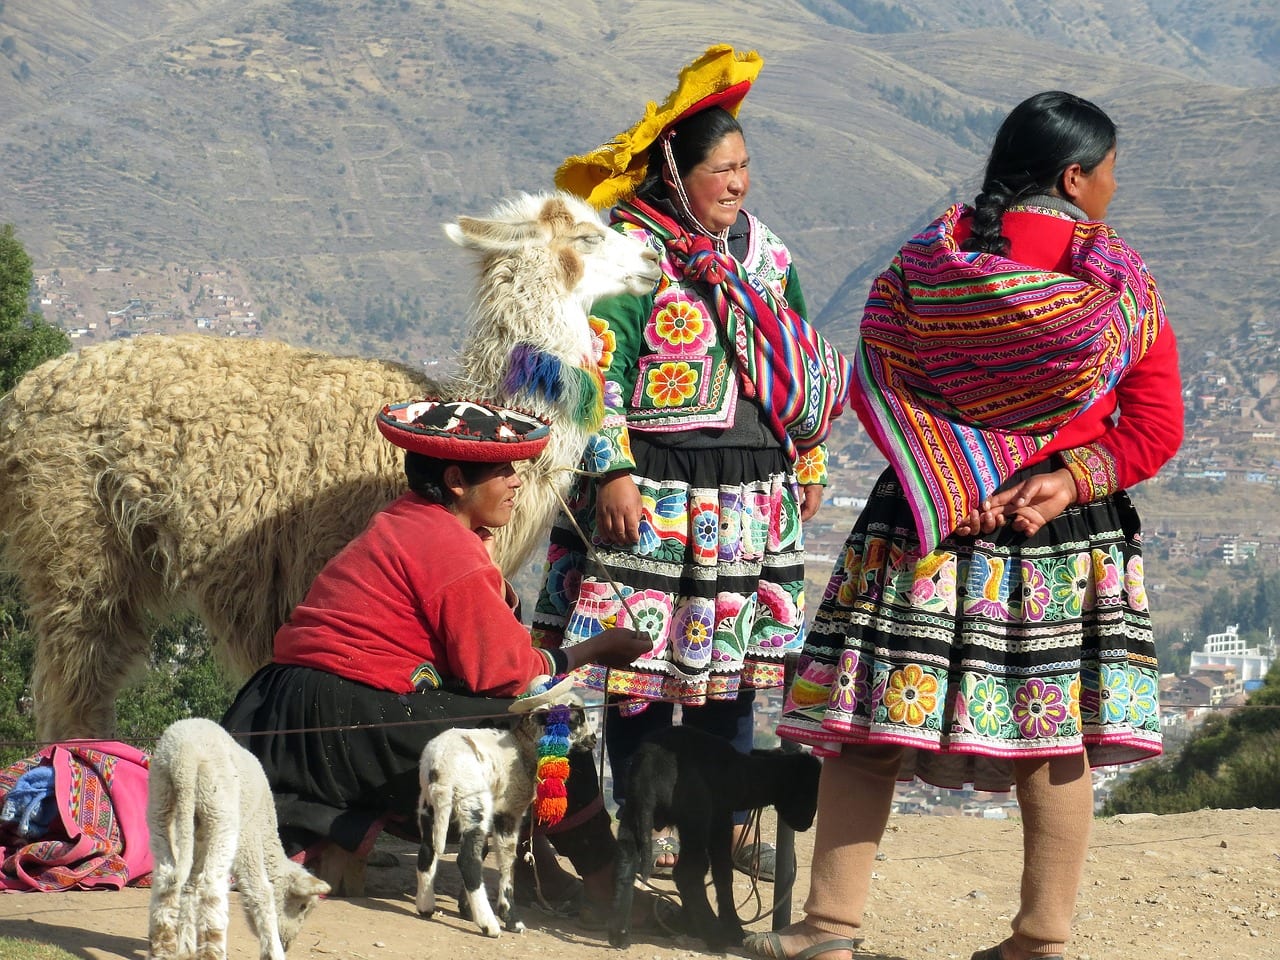 Peruvian culture